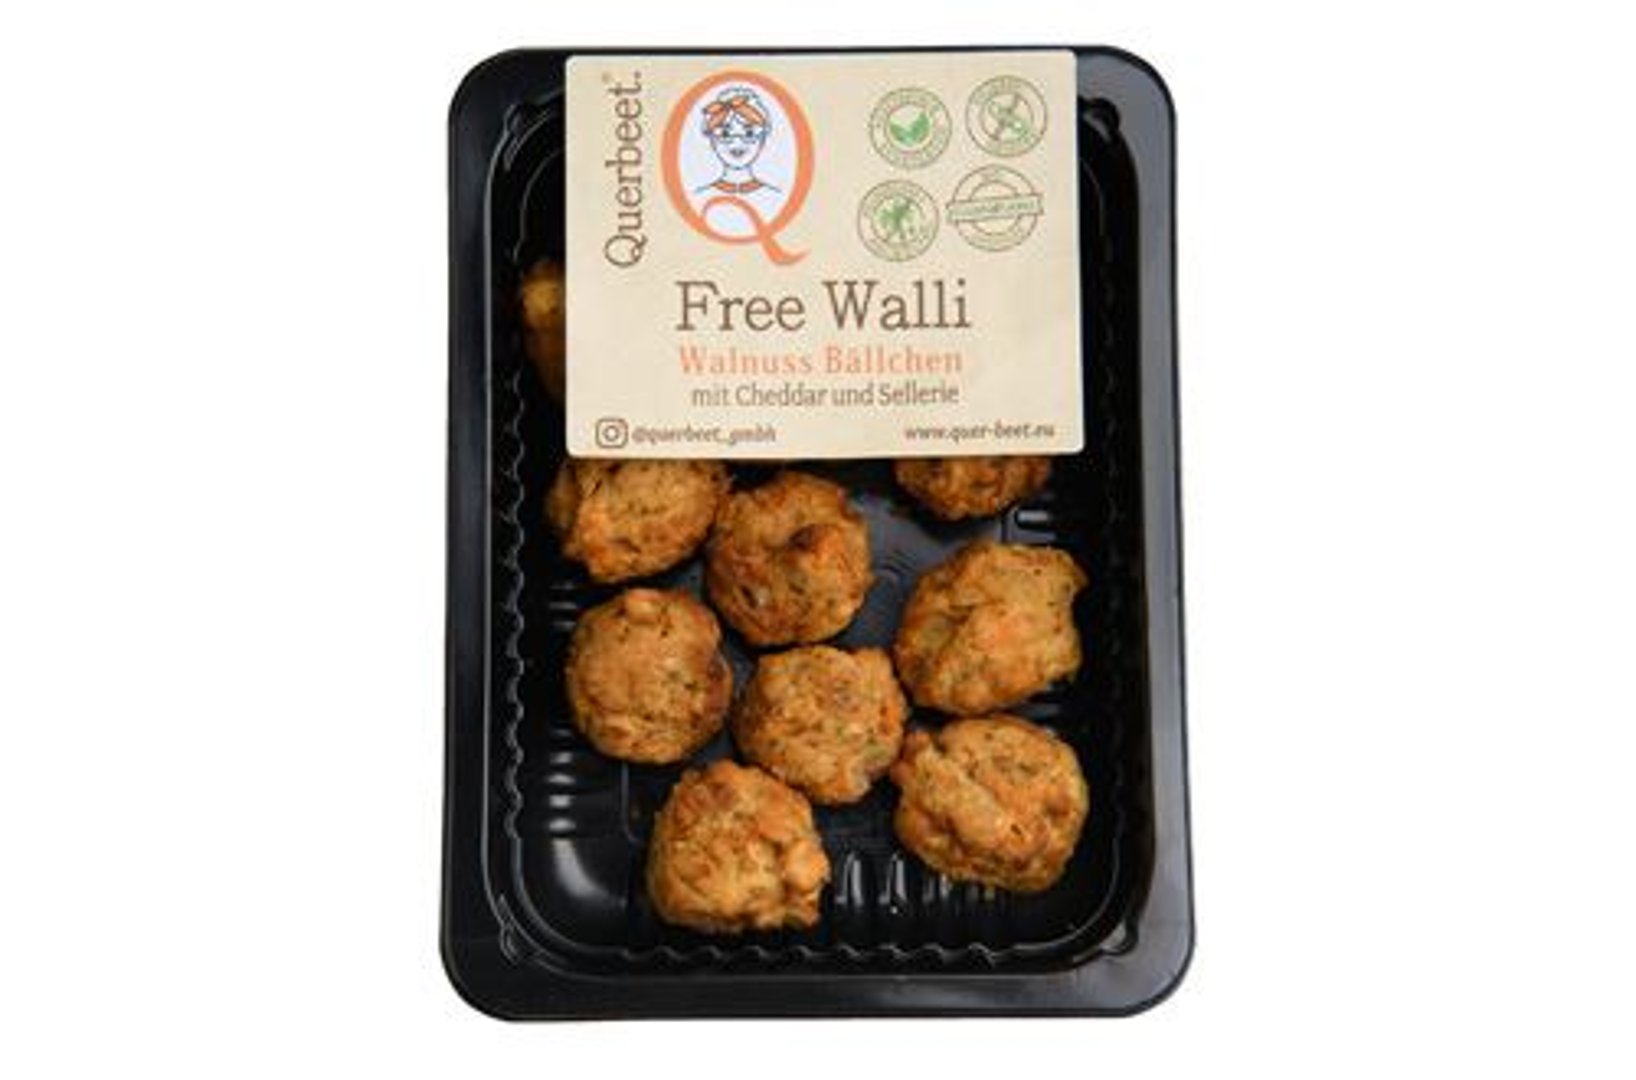 Querbeet - Free Walli Walnuss Bällchen vegetarisch gekühlt 12 Stück à 15 g - 180 g Packung